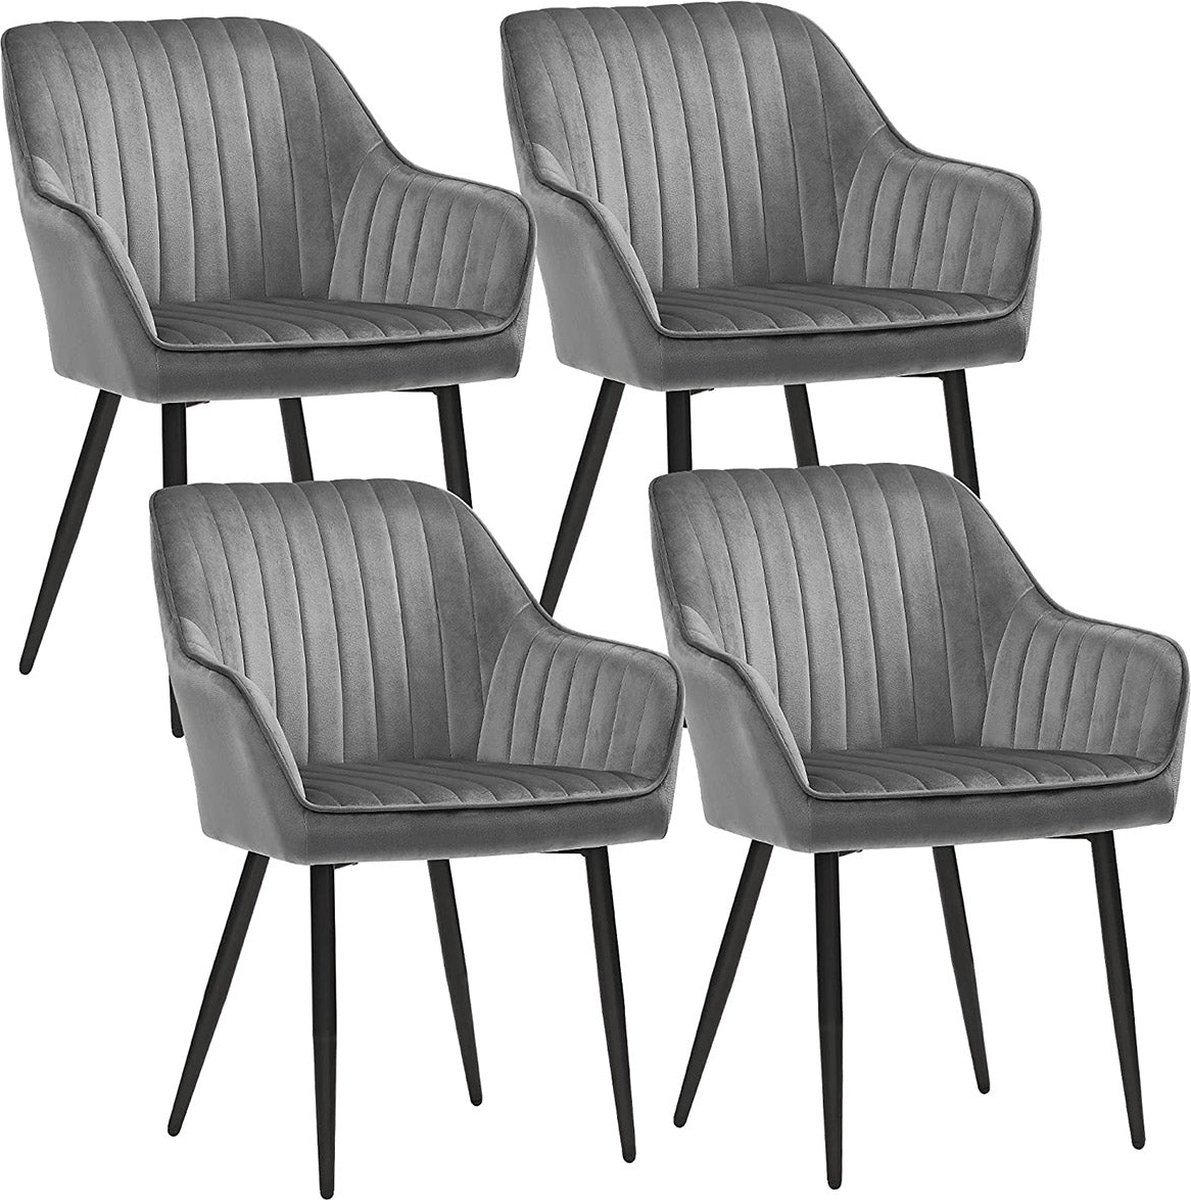 Eetkamerstoelen - Keukenstoelen - Fauteuils - Gestoffeerde stoelen - Set van 4 - Lichtgrijs